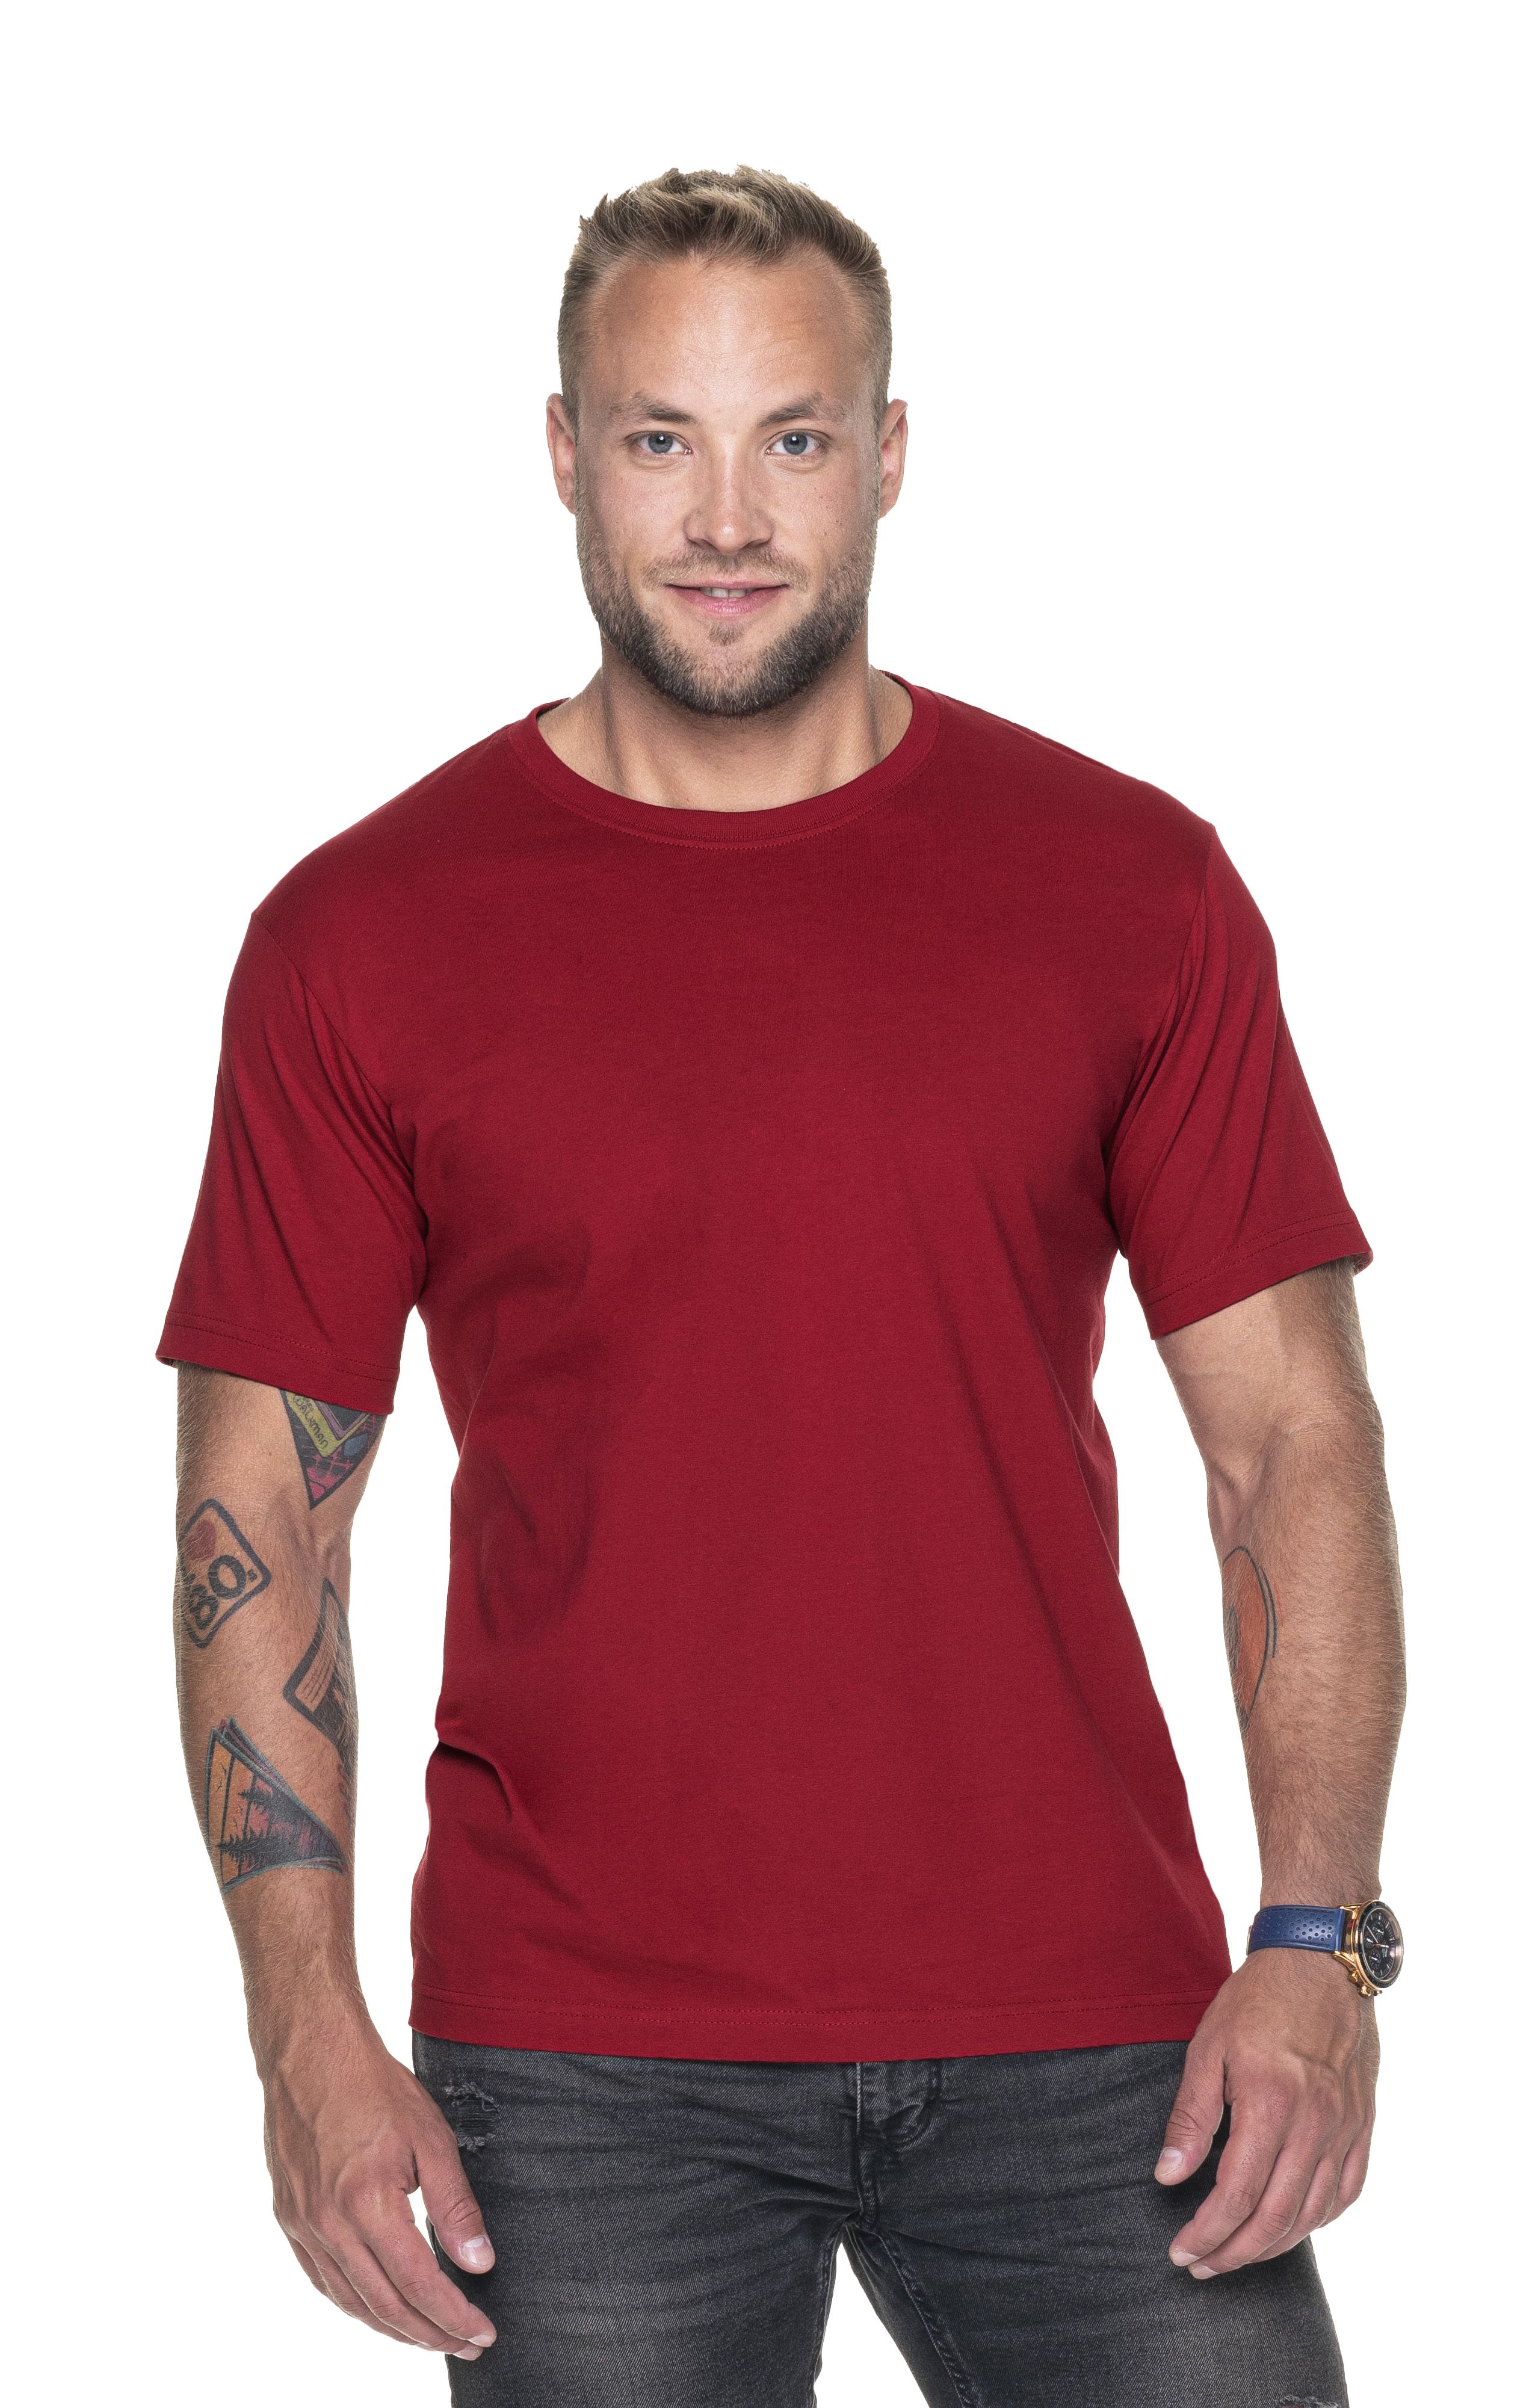 Koszulka Promostars Premium - ciemno czerwona